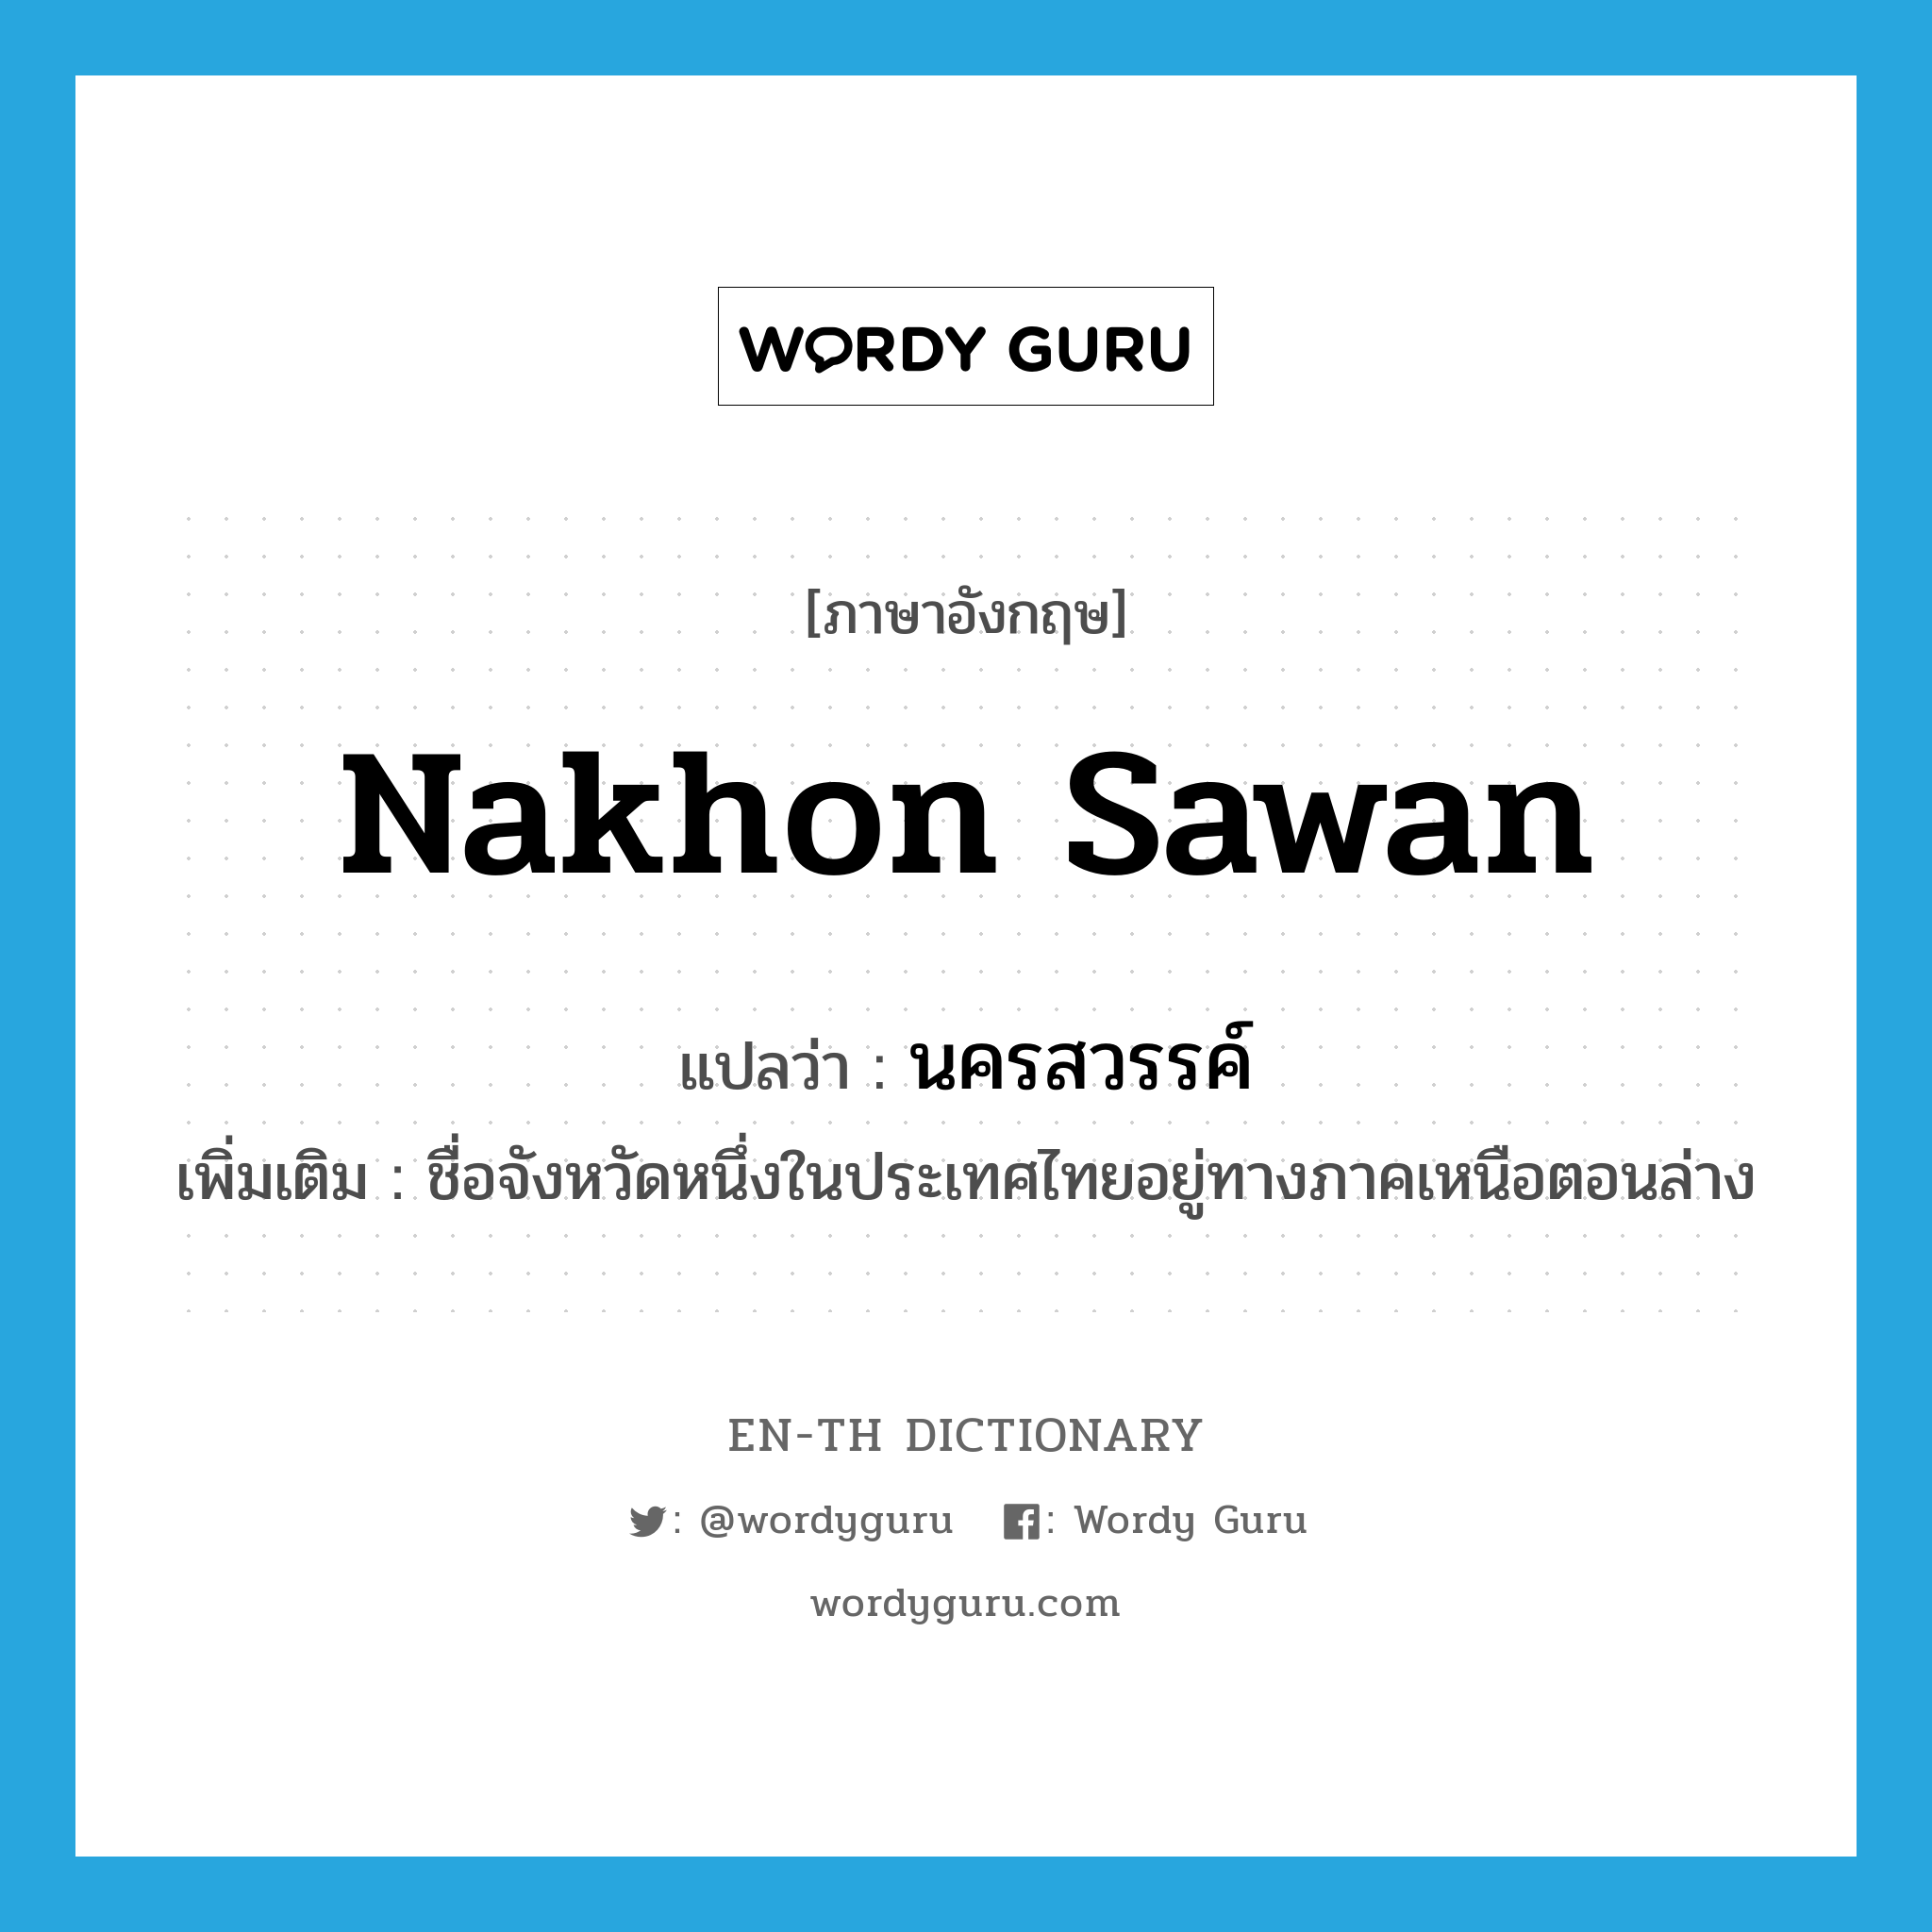 นครสวรรค์ ภาษาอังกฤษ?, คำศัพท์ภาษาอังกฤษ นครสวรรค์ แปลว่า Nakhon Sawan ประเภท N เพิ่มเติม ชื่อจังหวัดหนึ่งในประเทศไทยอยู่ทางภาคเหนือตอนล่าง หมวด N